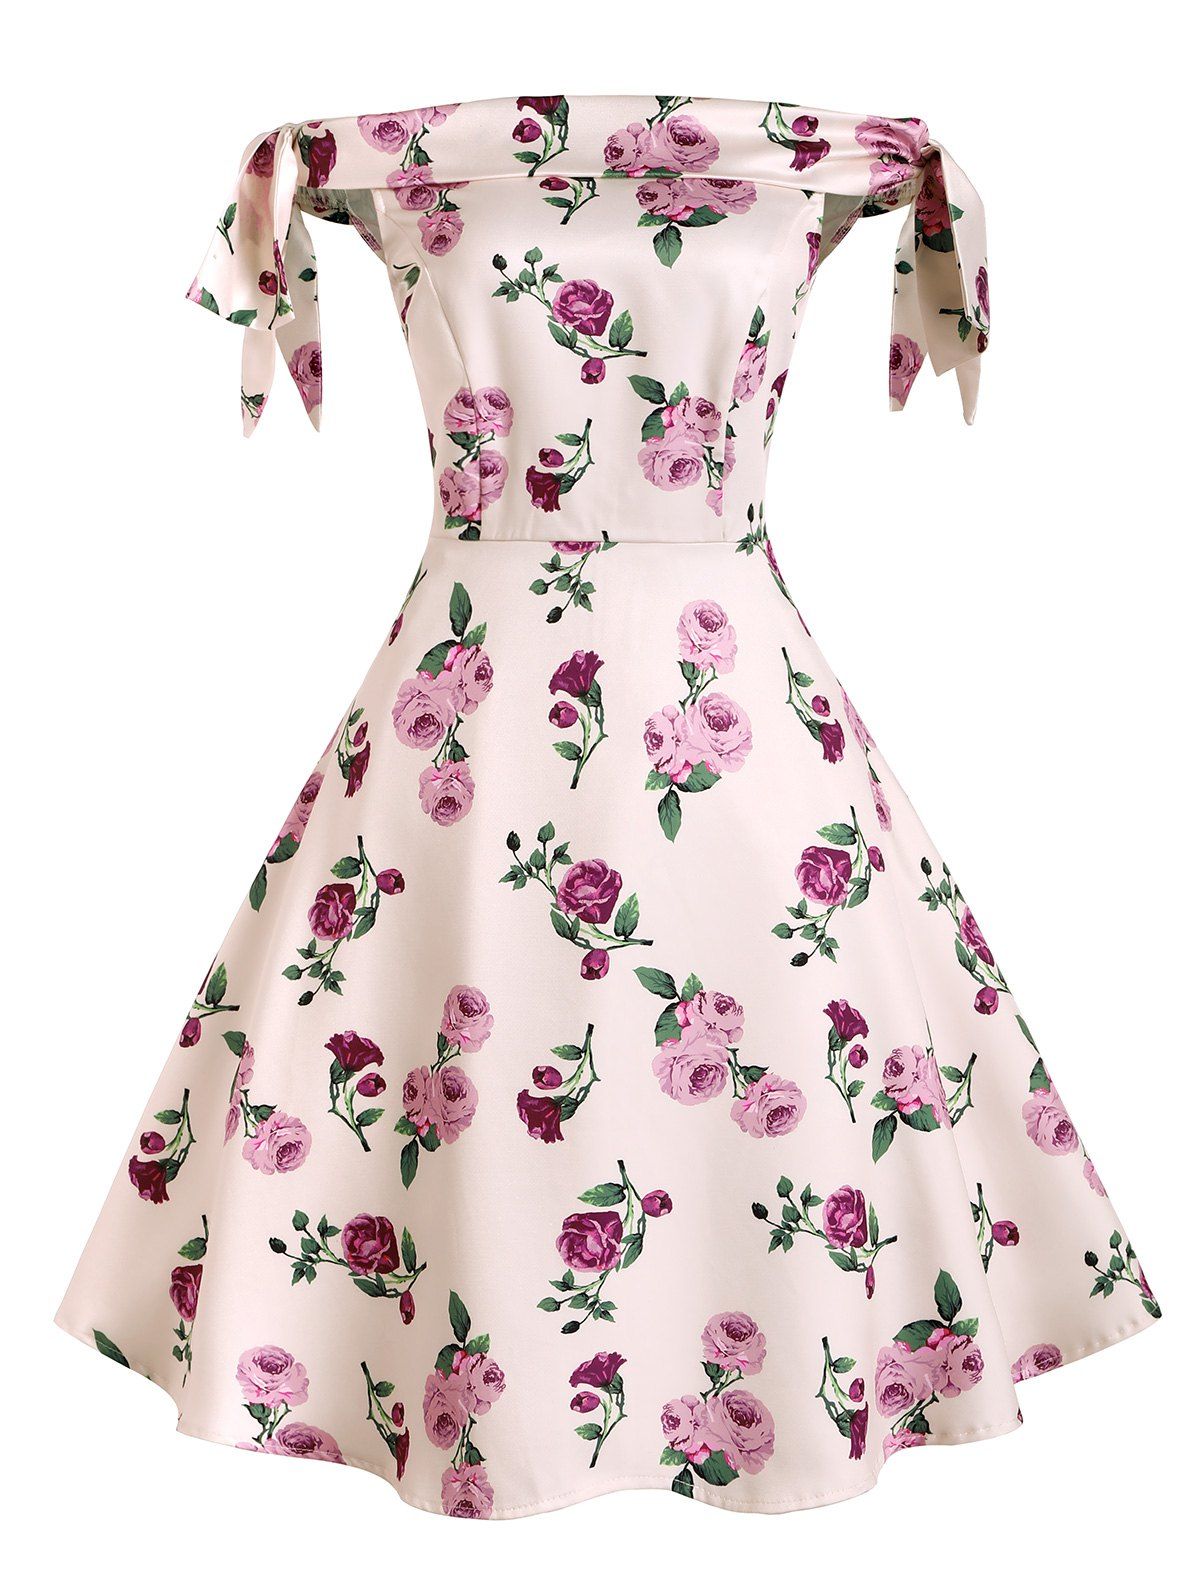 Bowknot Polka Dot Floral Off Shoulder Dress - LIGHT PINK S